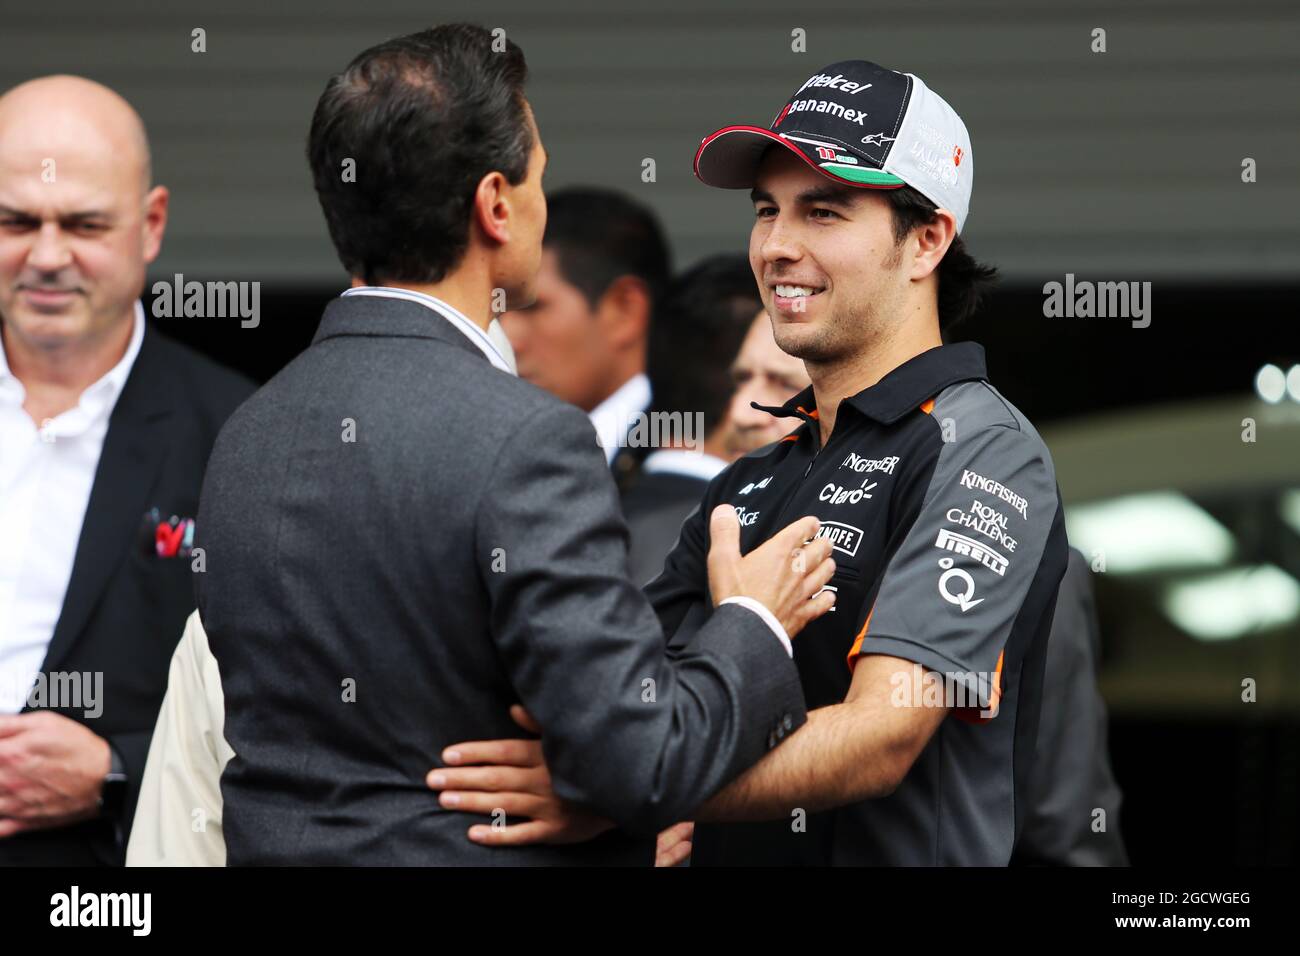 (Da L a R): Enrique pena Nieto (MEX) Presidente messicano con Sergio Perez (MEX) Sahara Force India F1. Gran Premio del Messico, giovedì 29 ottobre 2015. Città del Messico, Messico. Foto Stock